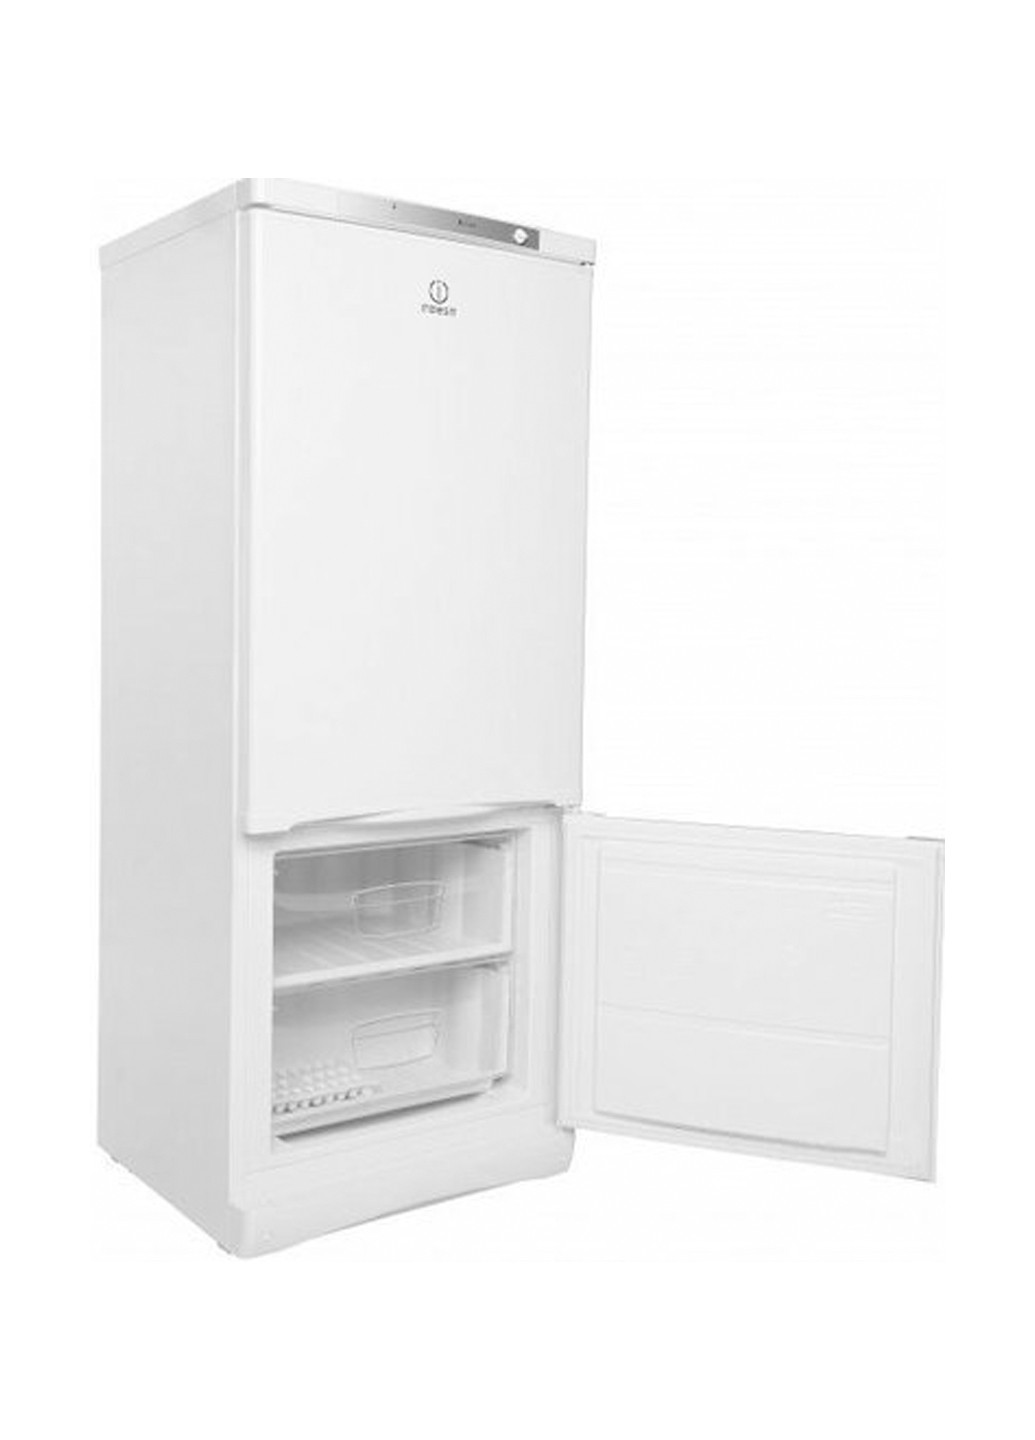 Холодильник комби Indesit IBS 15 AA (UA)